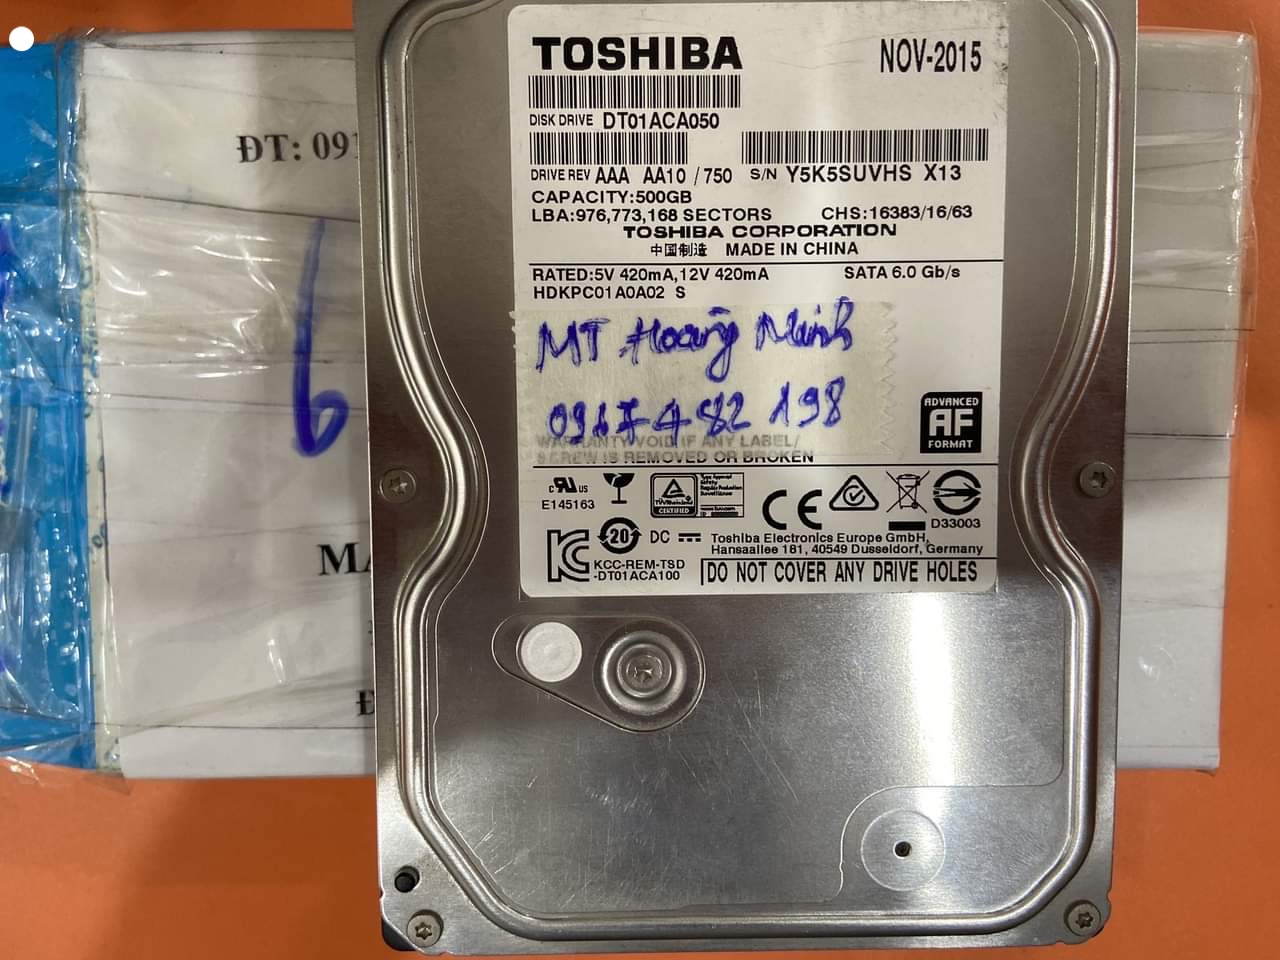 Khôi phục dữ liệu ổ cứng Toshiba 500GB lỗi đầu đọc tại Vĩnh Phúc 26/10/2020 - cuumaytinh